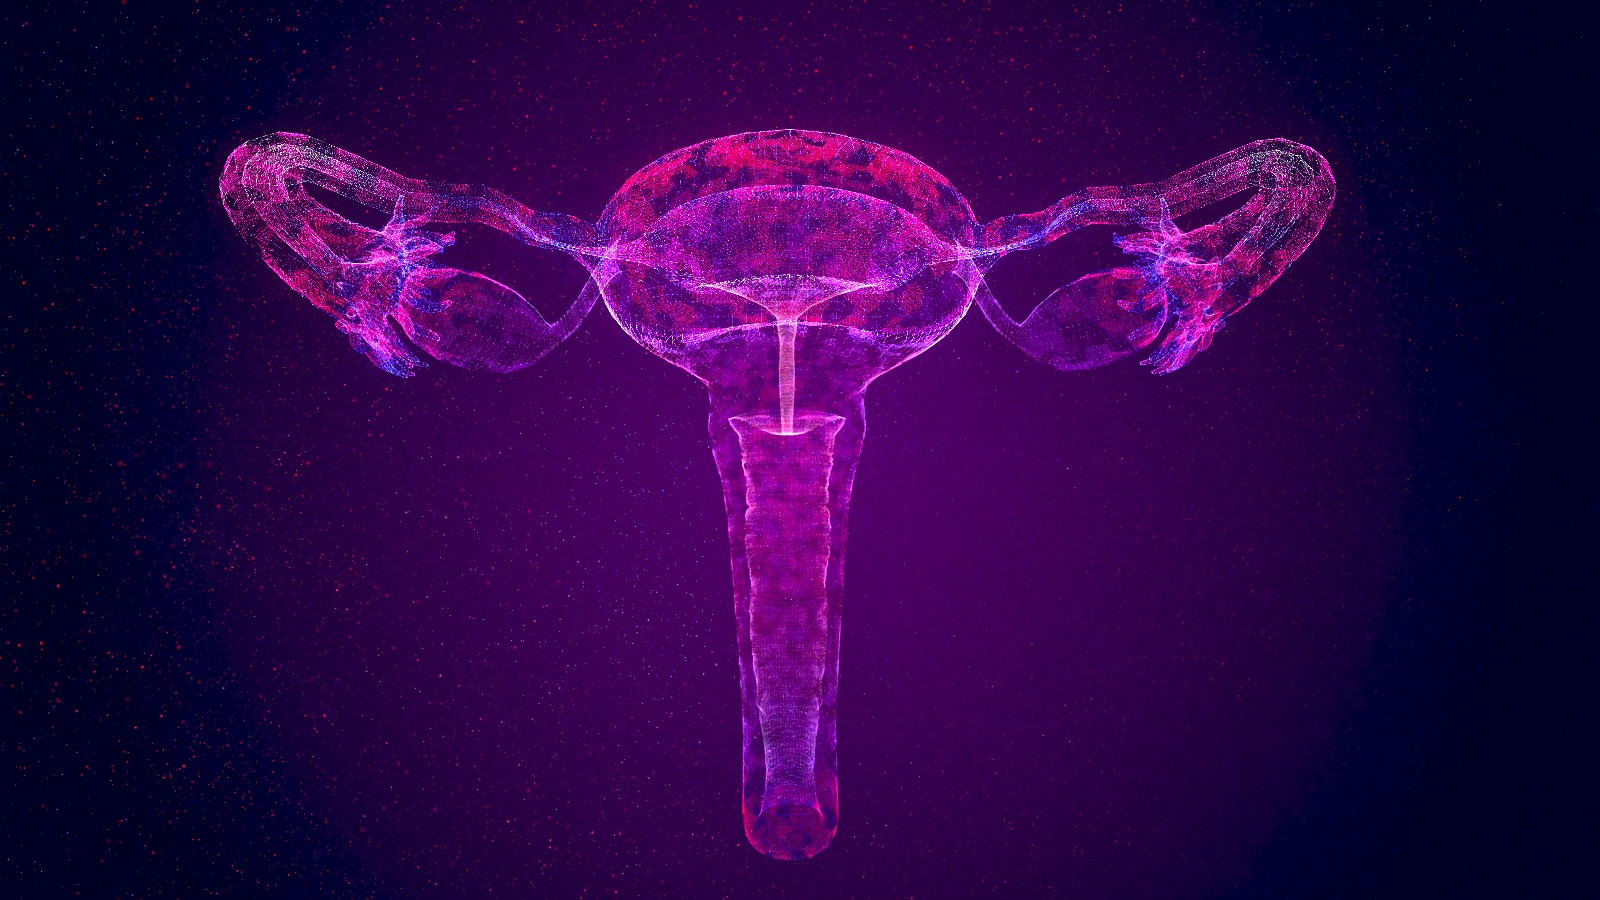 Modélisation en 3D d’un utérus